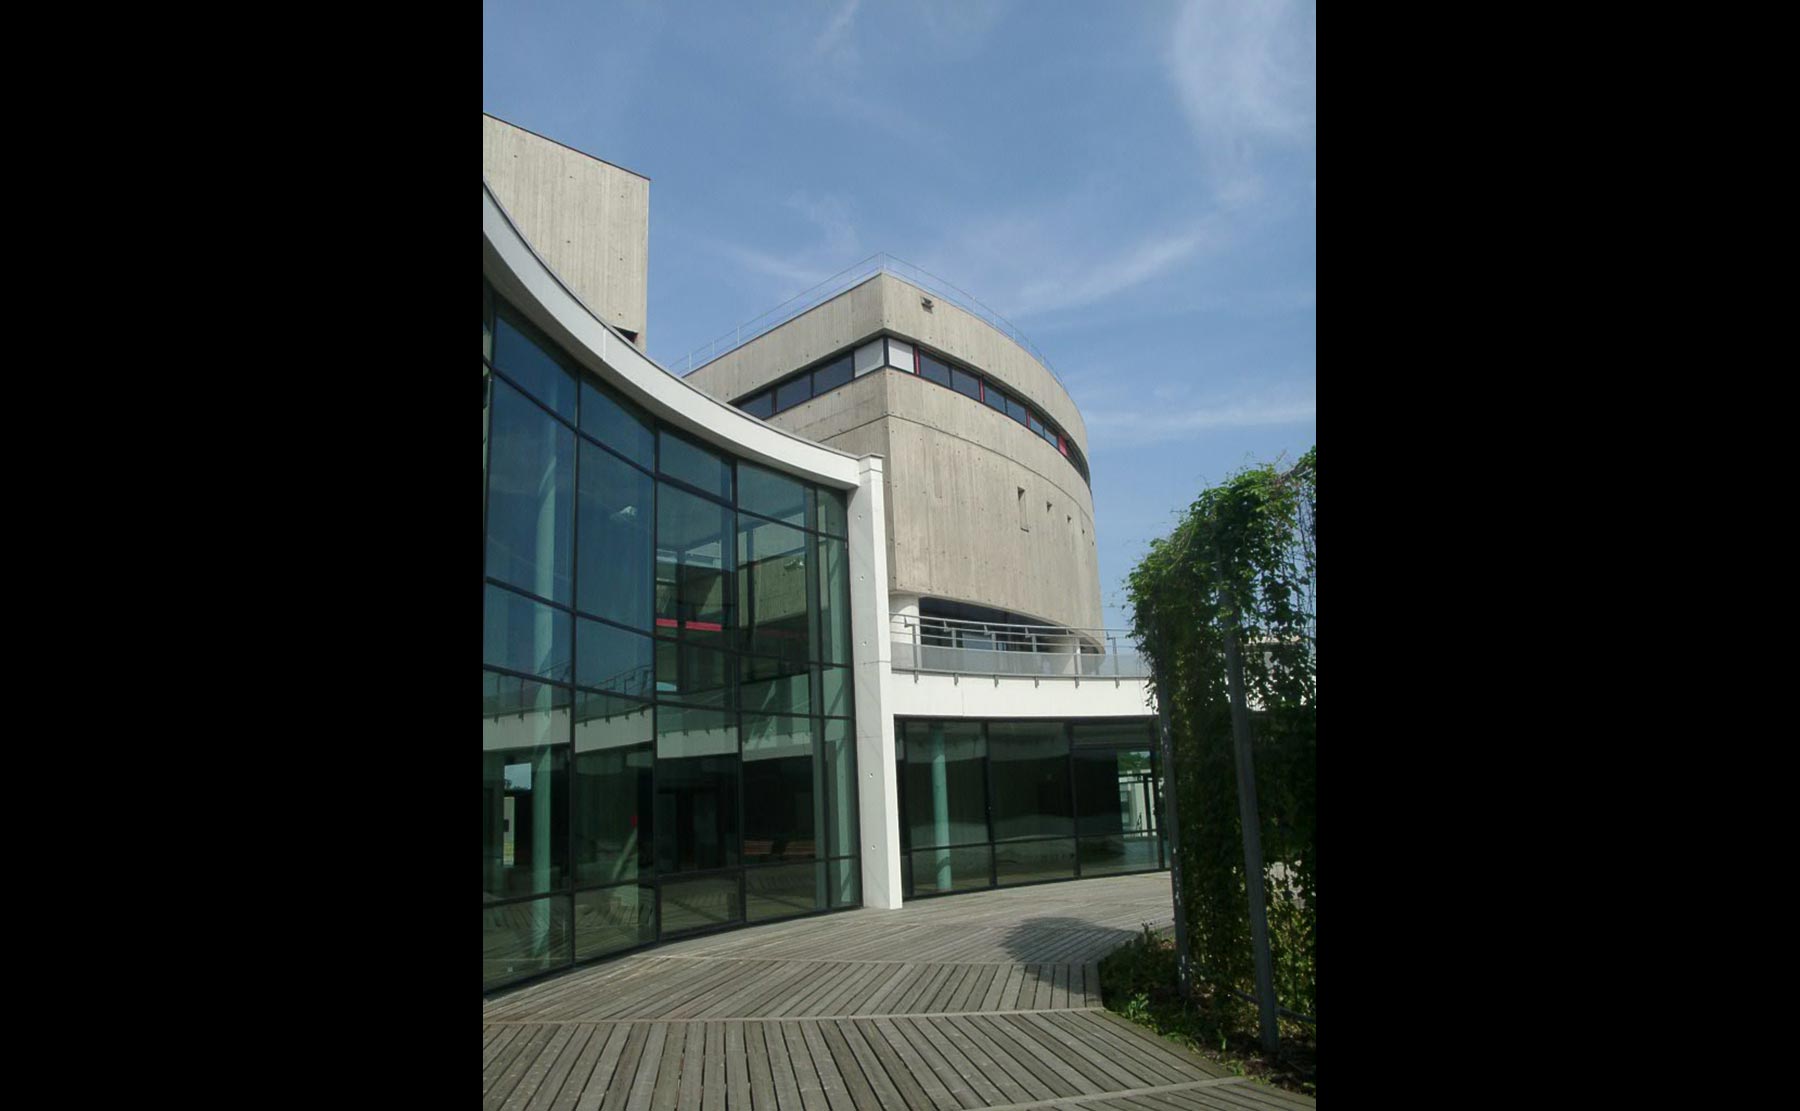  - Faculté des Sciences et Techniques / Mulhouse